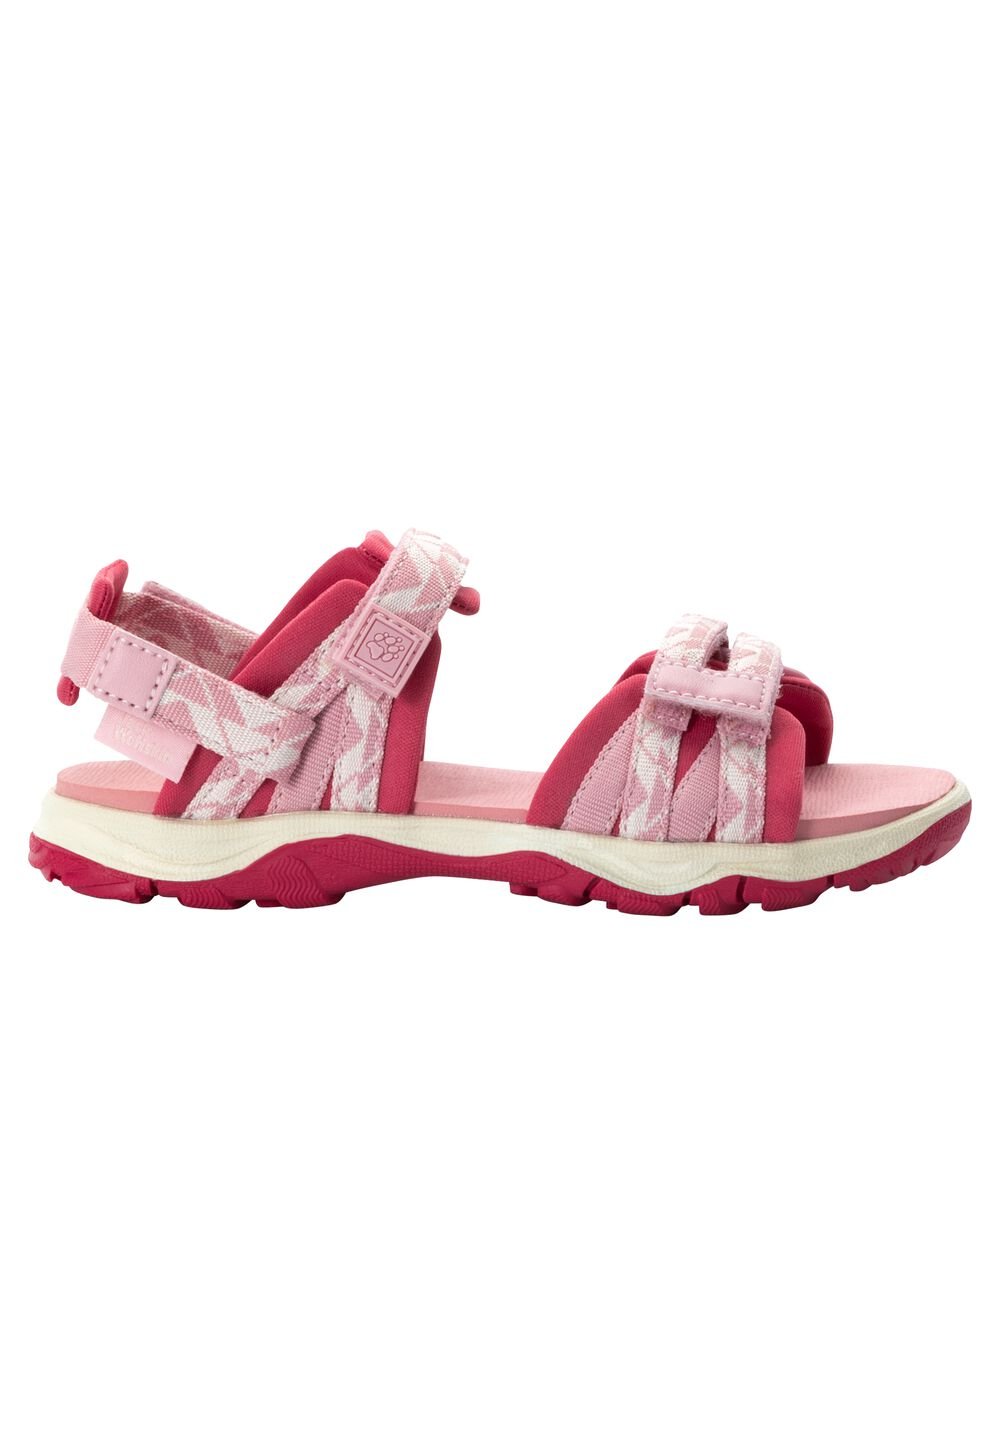 Jack Wolfskin 2 IN 1 Sandal Kids Kinderen sandalen 32 soft pink soft pink